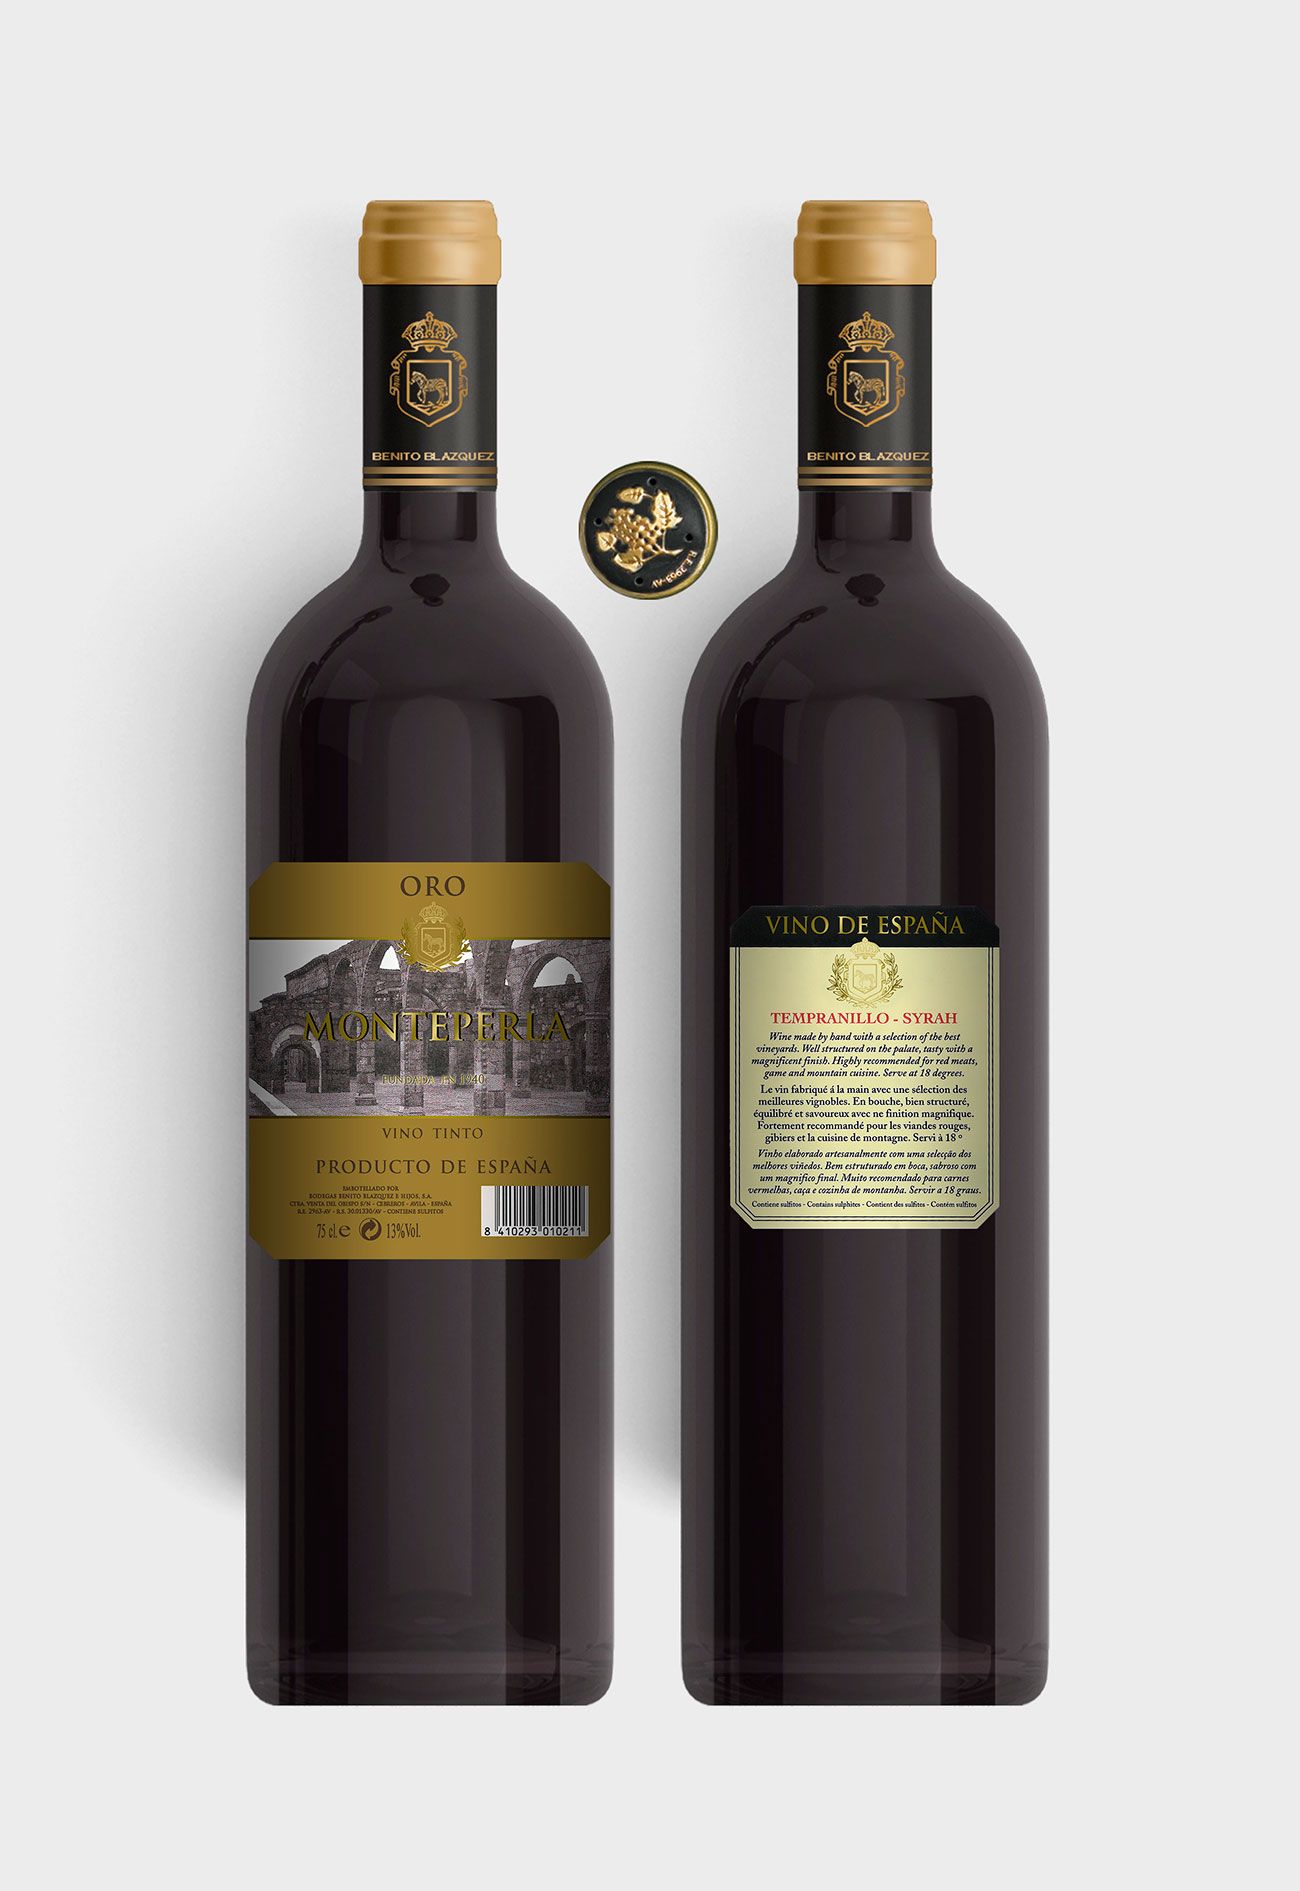 Benito Blázquez - Botella vino tinto Monteperla